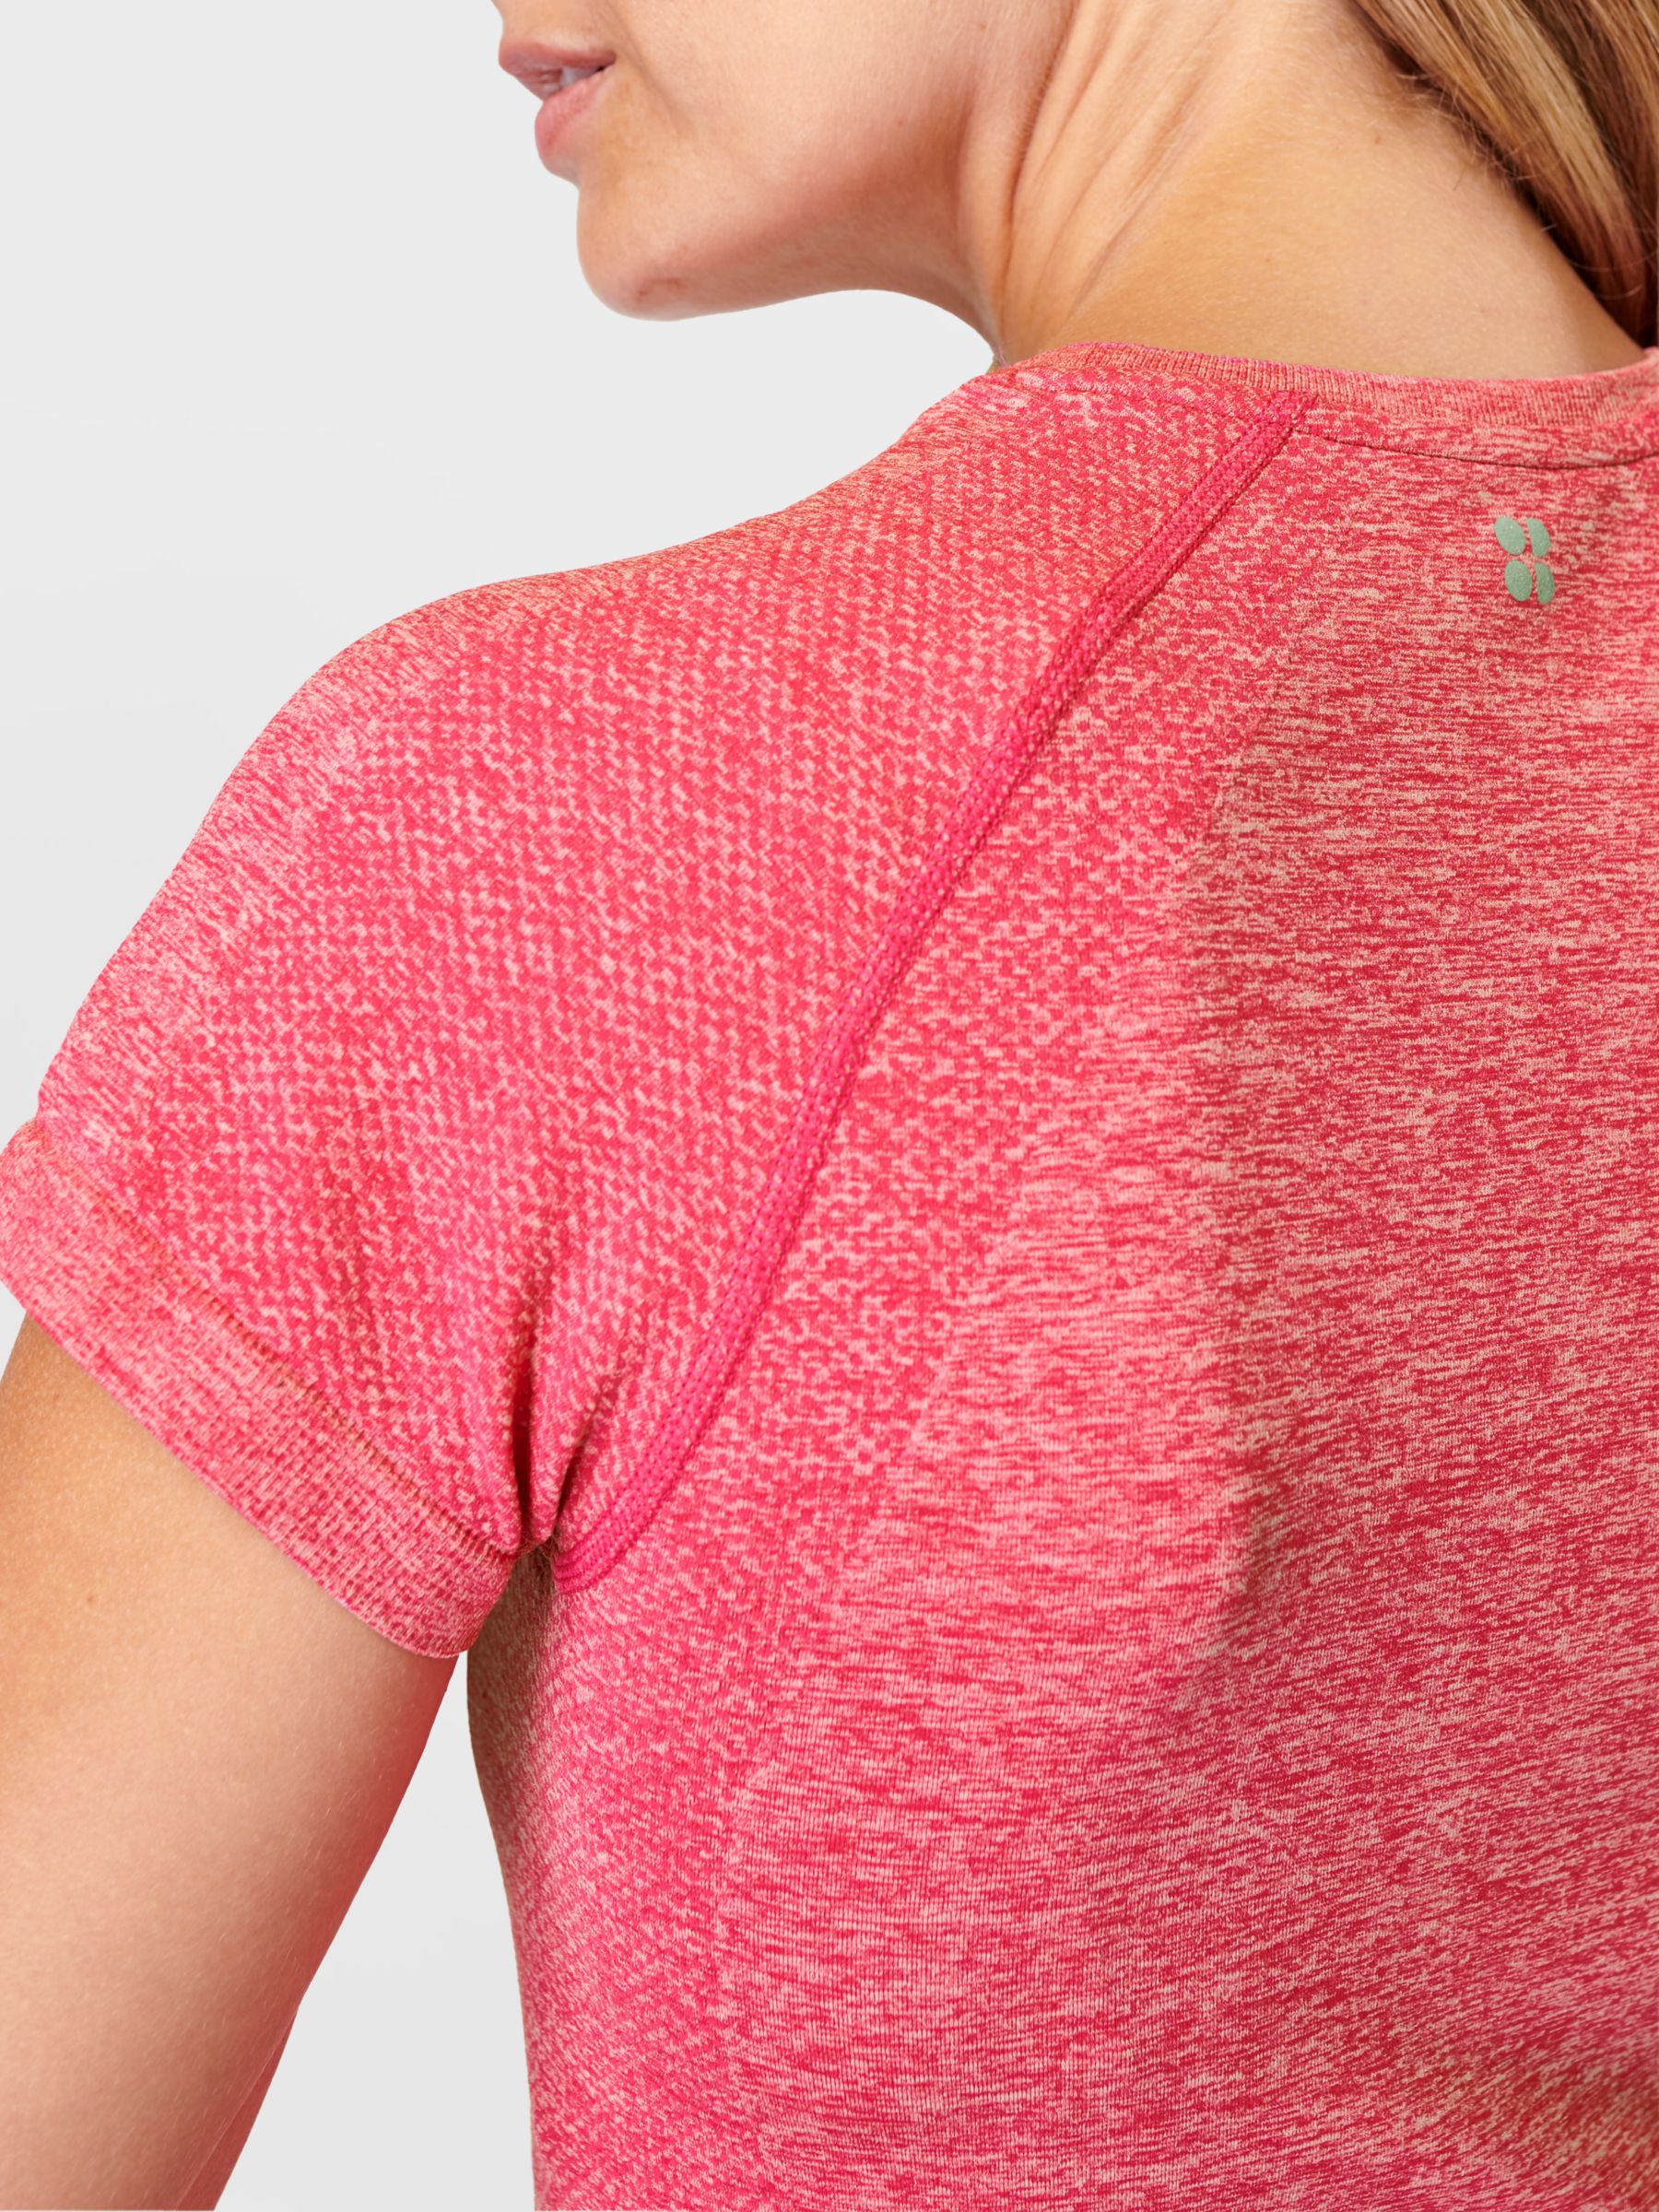 Sweaty Betty Athlete Seamless Workout T-Shirt, Punk Pink, XS